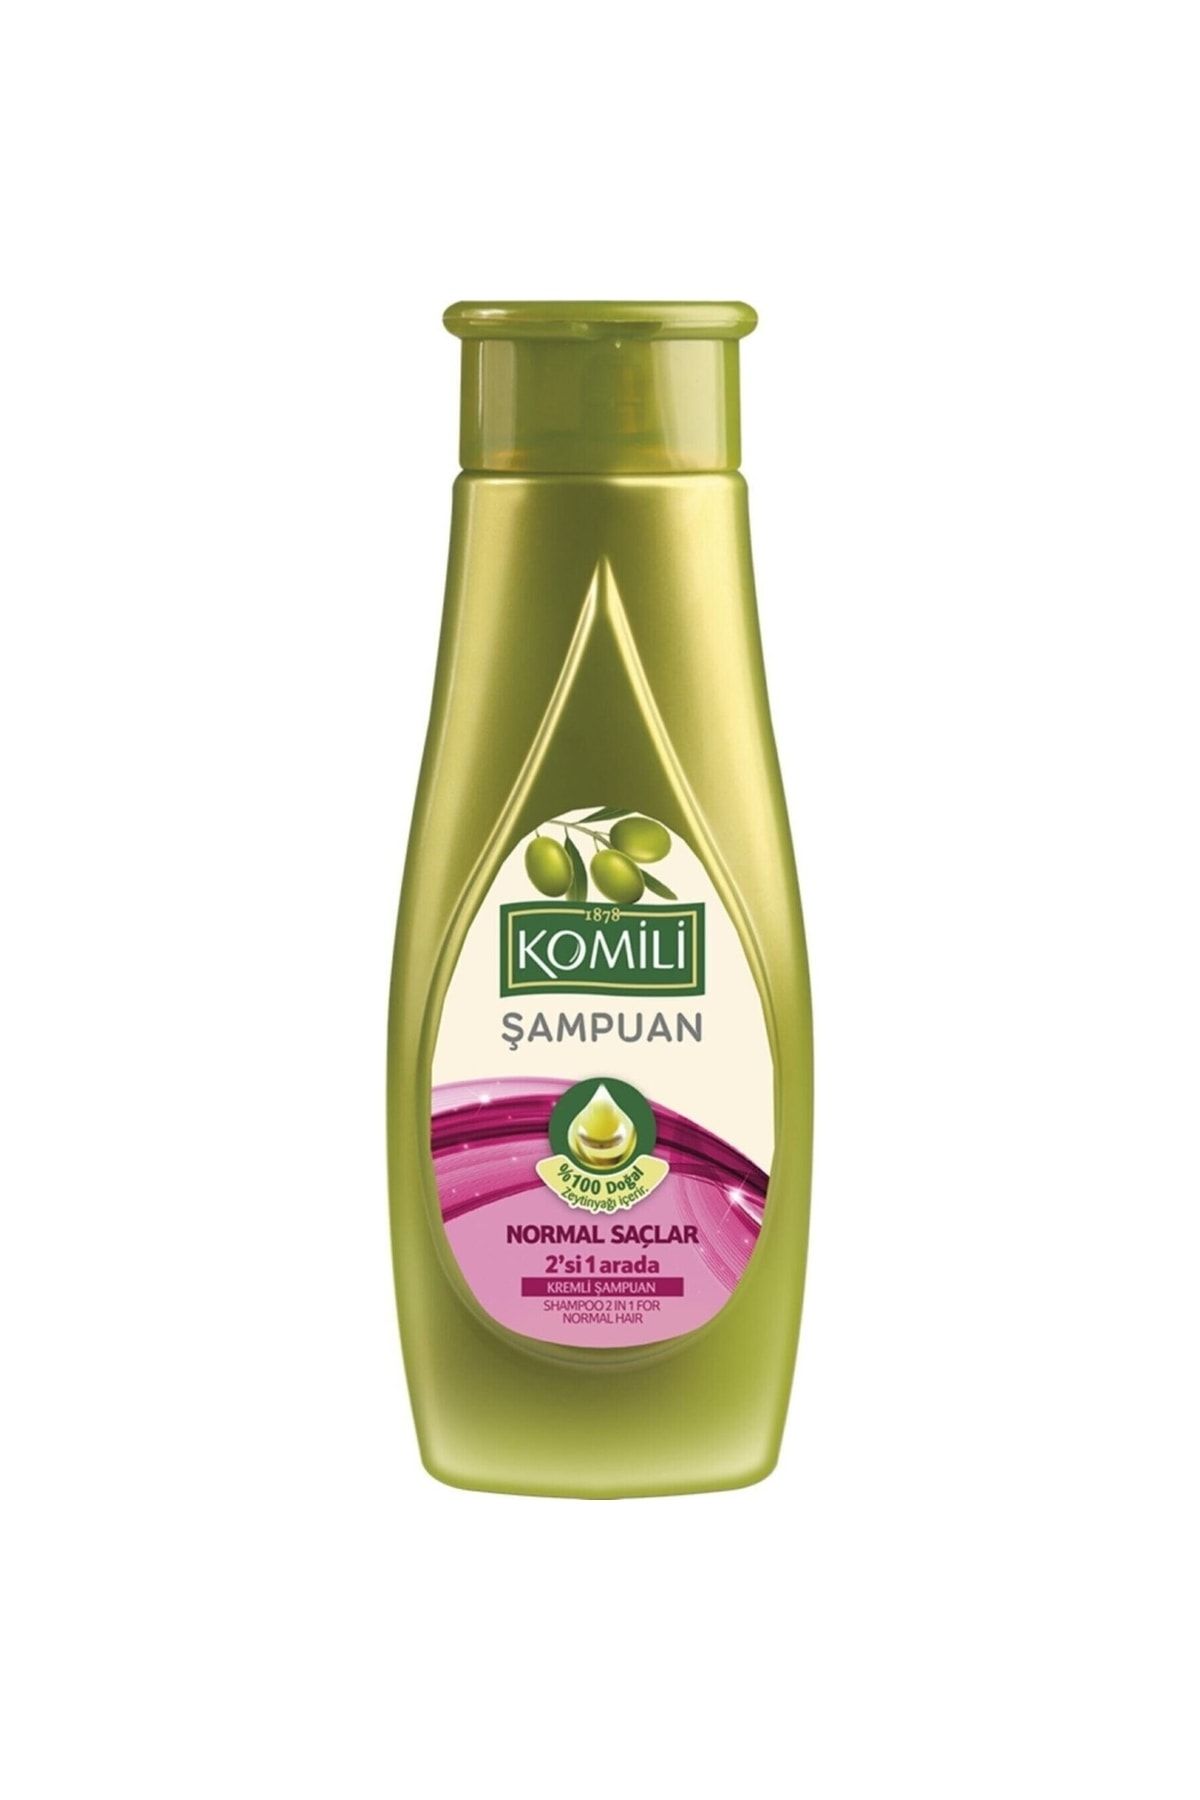 Komili Normal Saçlar Kremli Şampuan 2'si Bir Arada Besleyici Ve Onarıcı